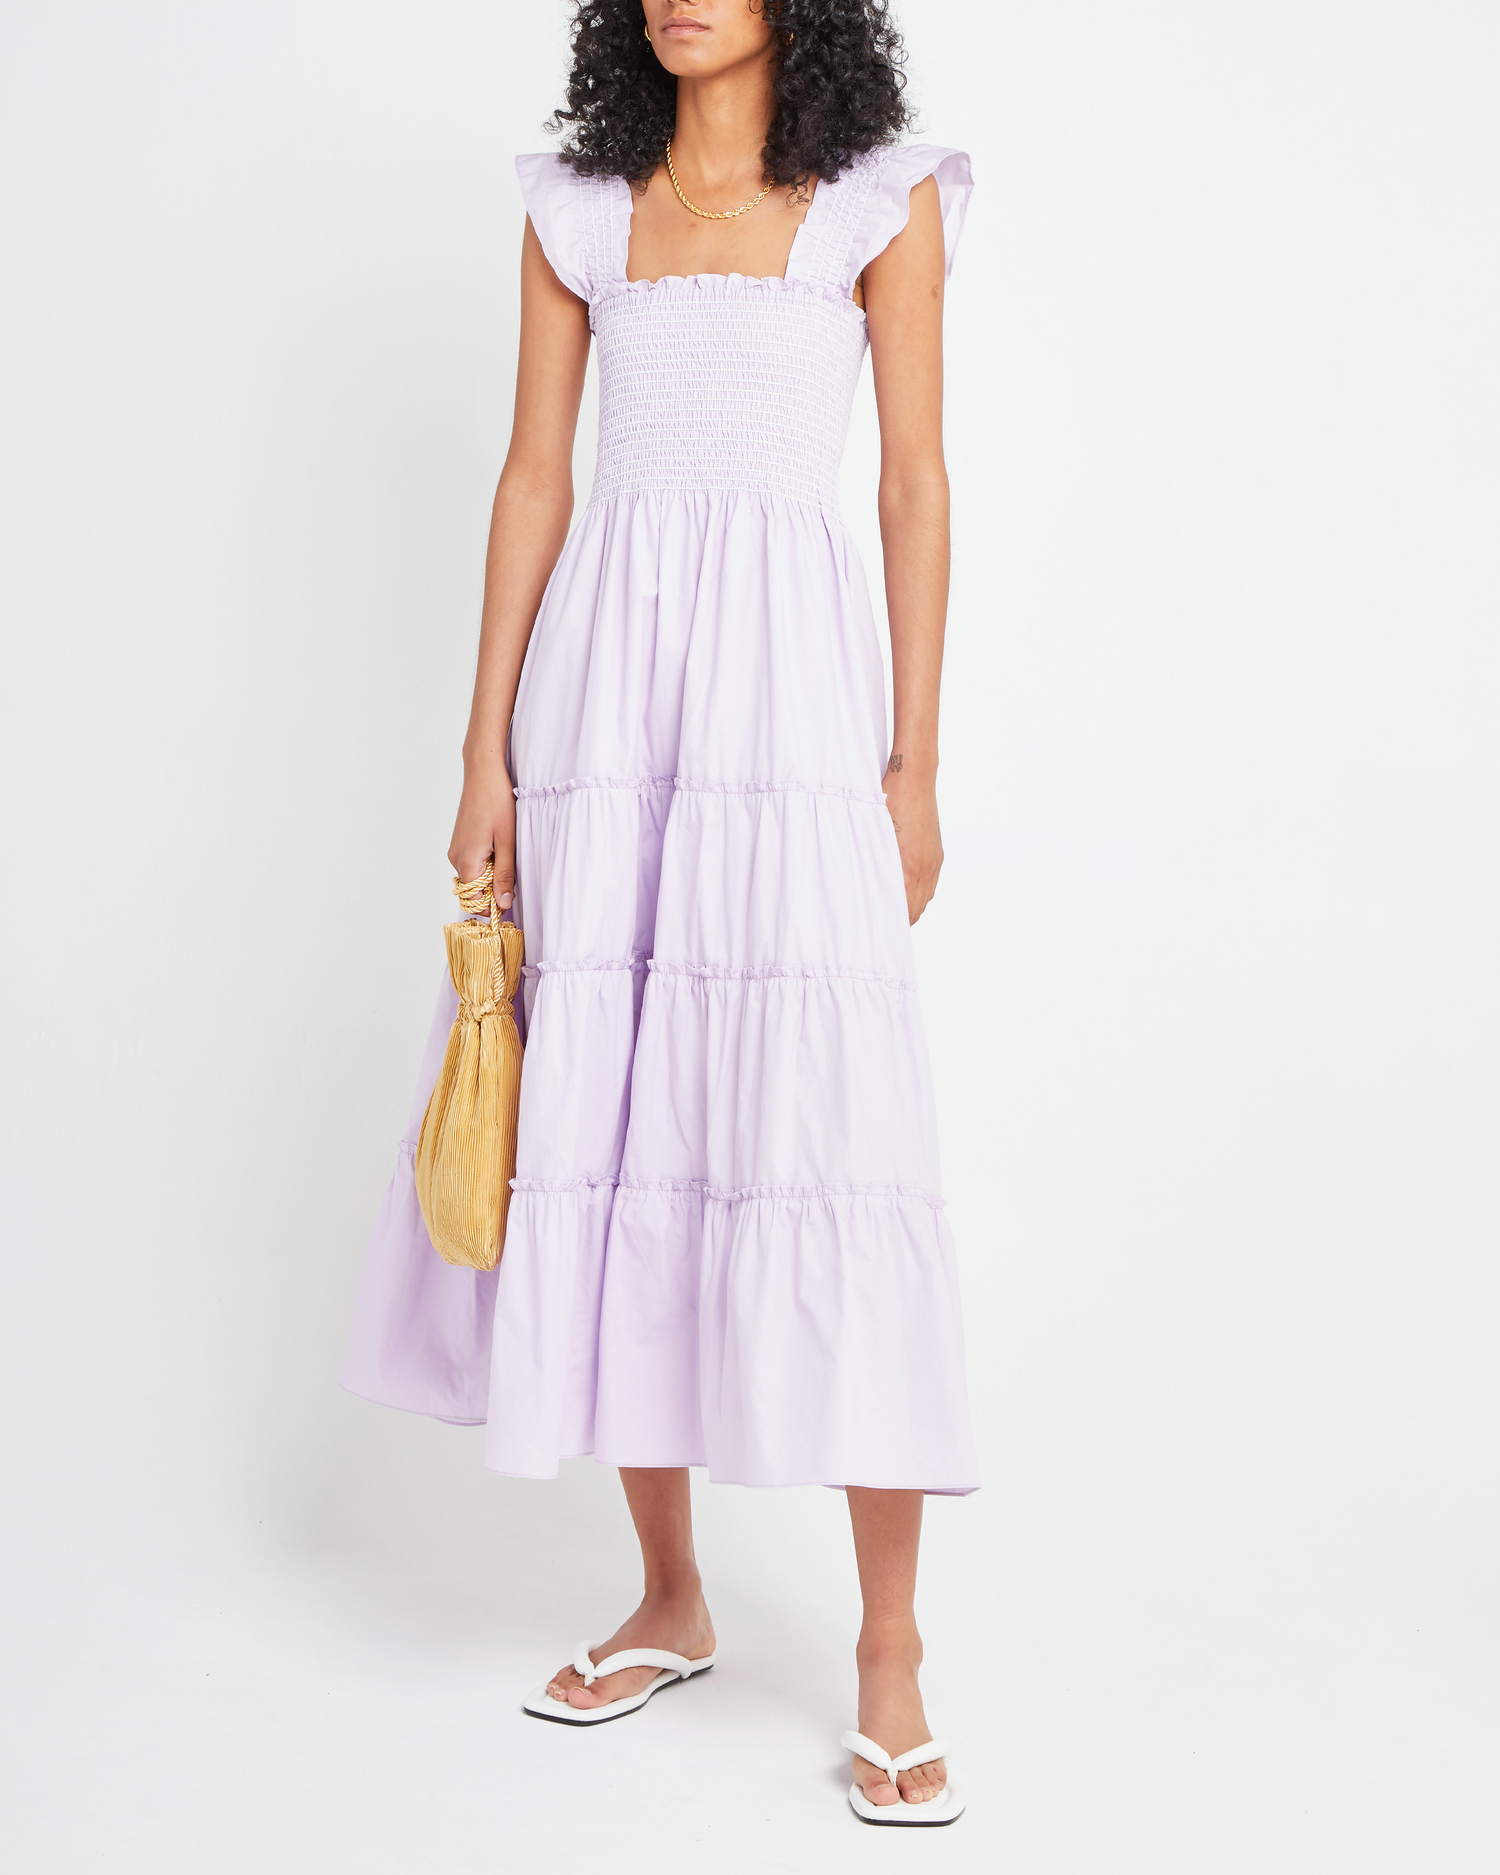 Sixth image of Calypso Maxi Dress, a purple maxi dress, ruffle cap sleeves, smocked bodice